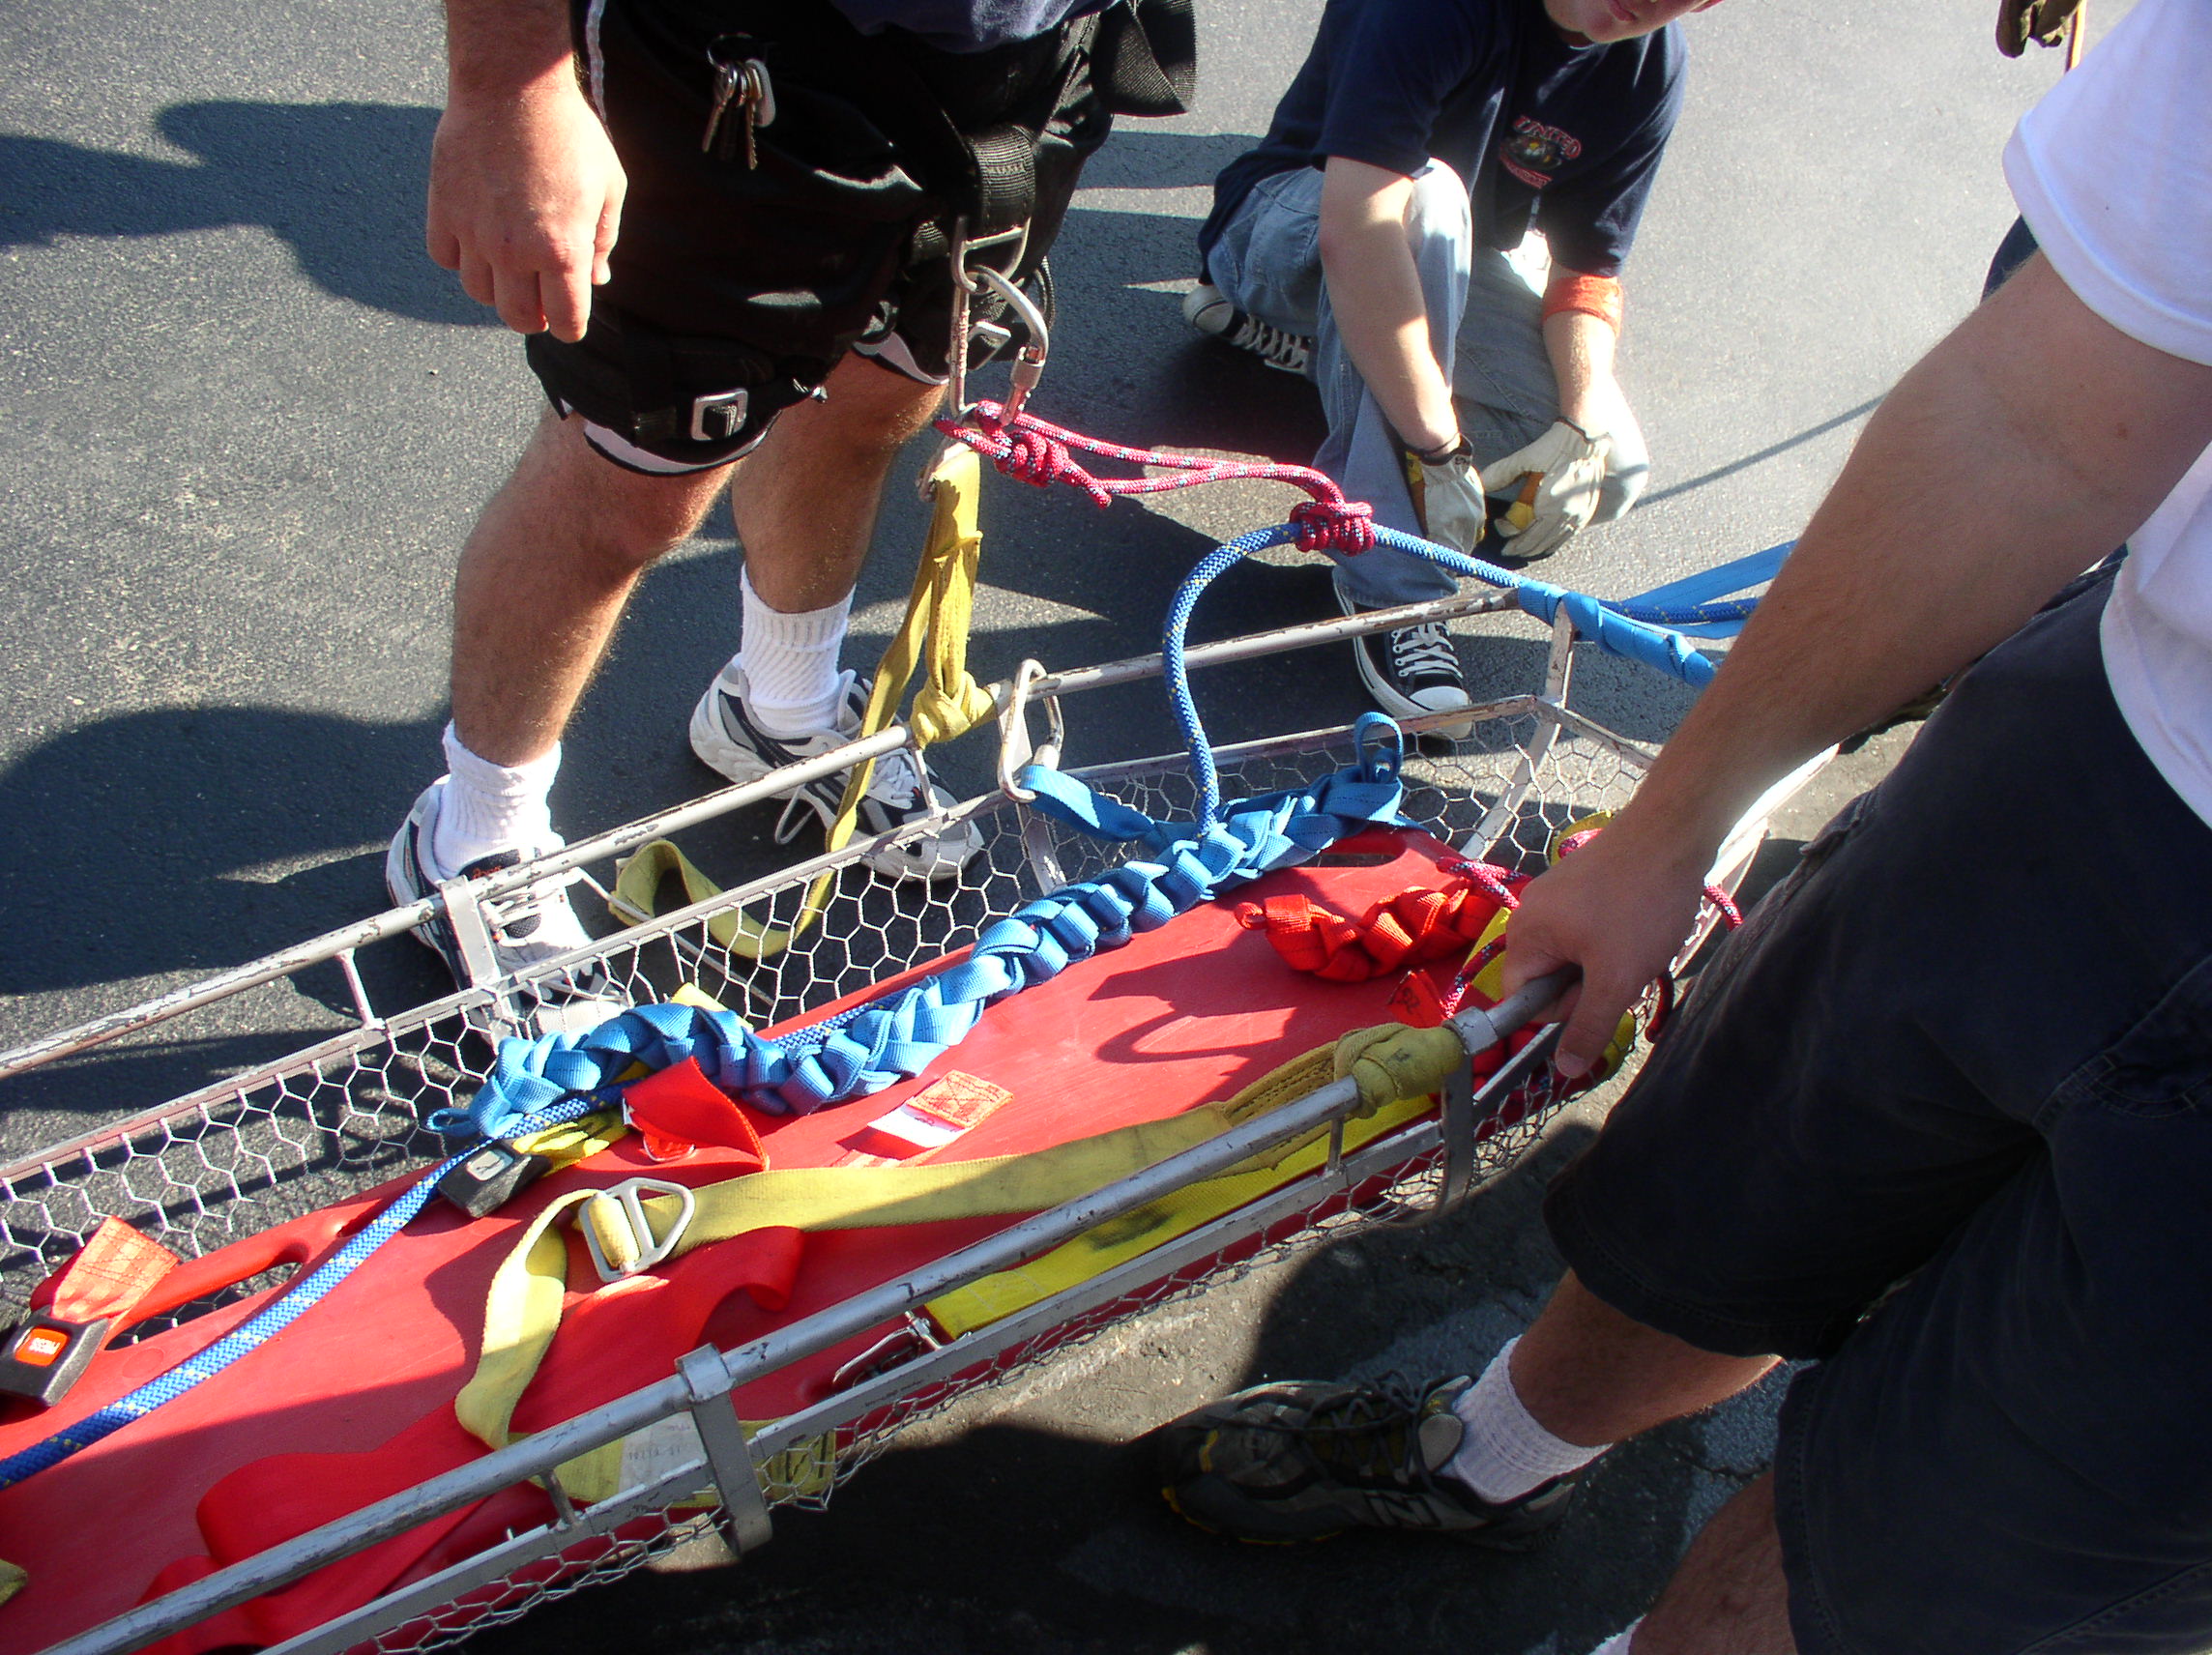 08-09-04  Training - Rope Rescue